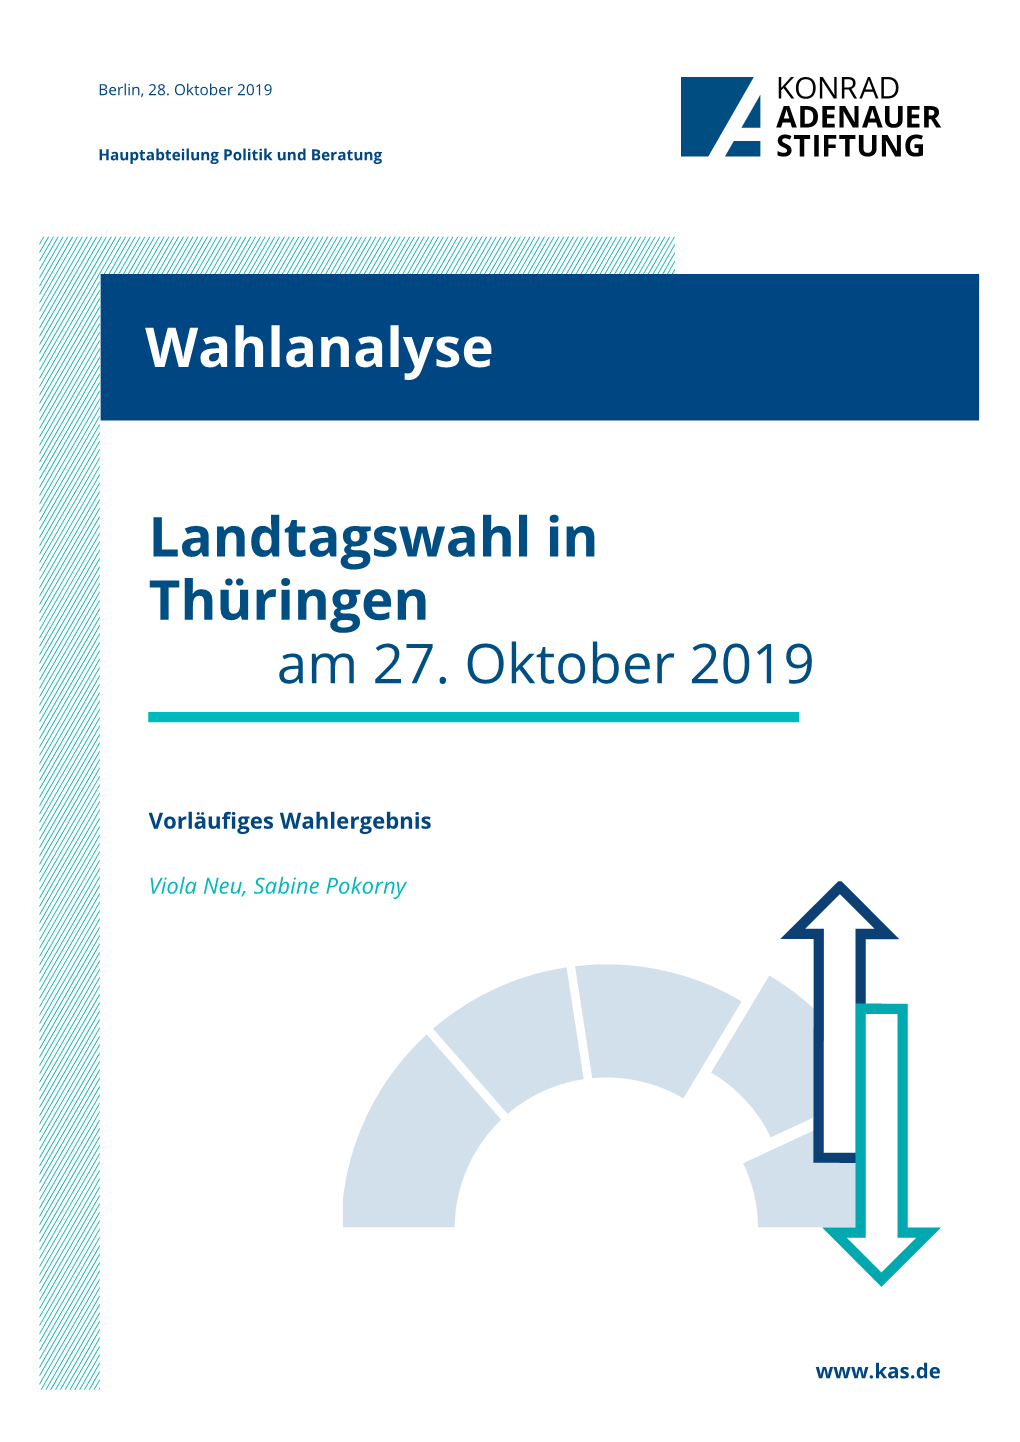 Die Landtagswahl in Thüringen Am 27. Oktober 2019